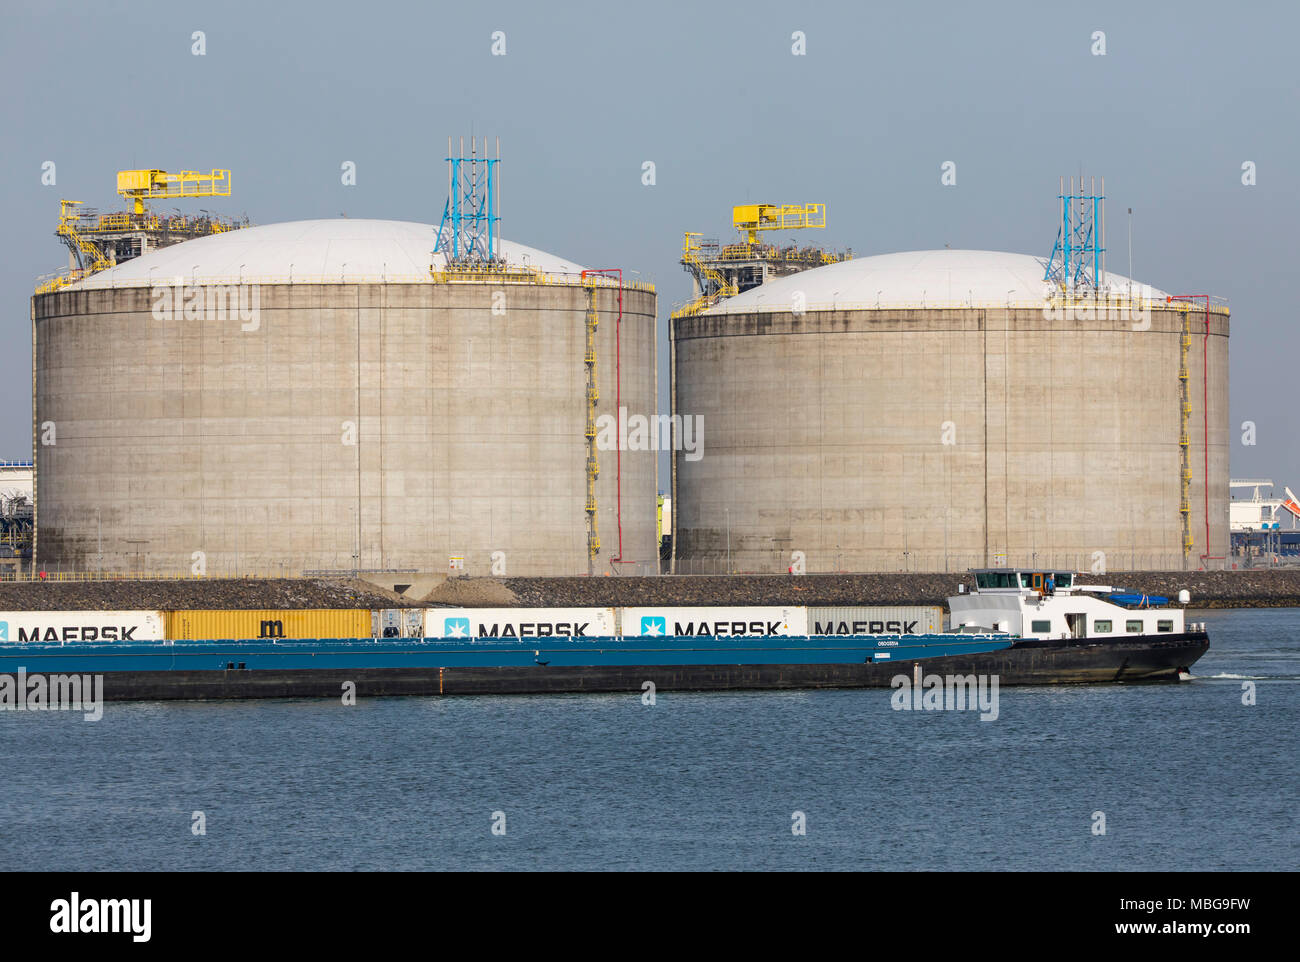 La marina de Rotterdam, Pays-Bas, port en eau profonde Maasvlakte 2, sur une terre créée artificiellement, en face de la côte d'origine, de grands réservoirs de Banque D'Images